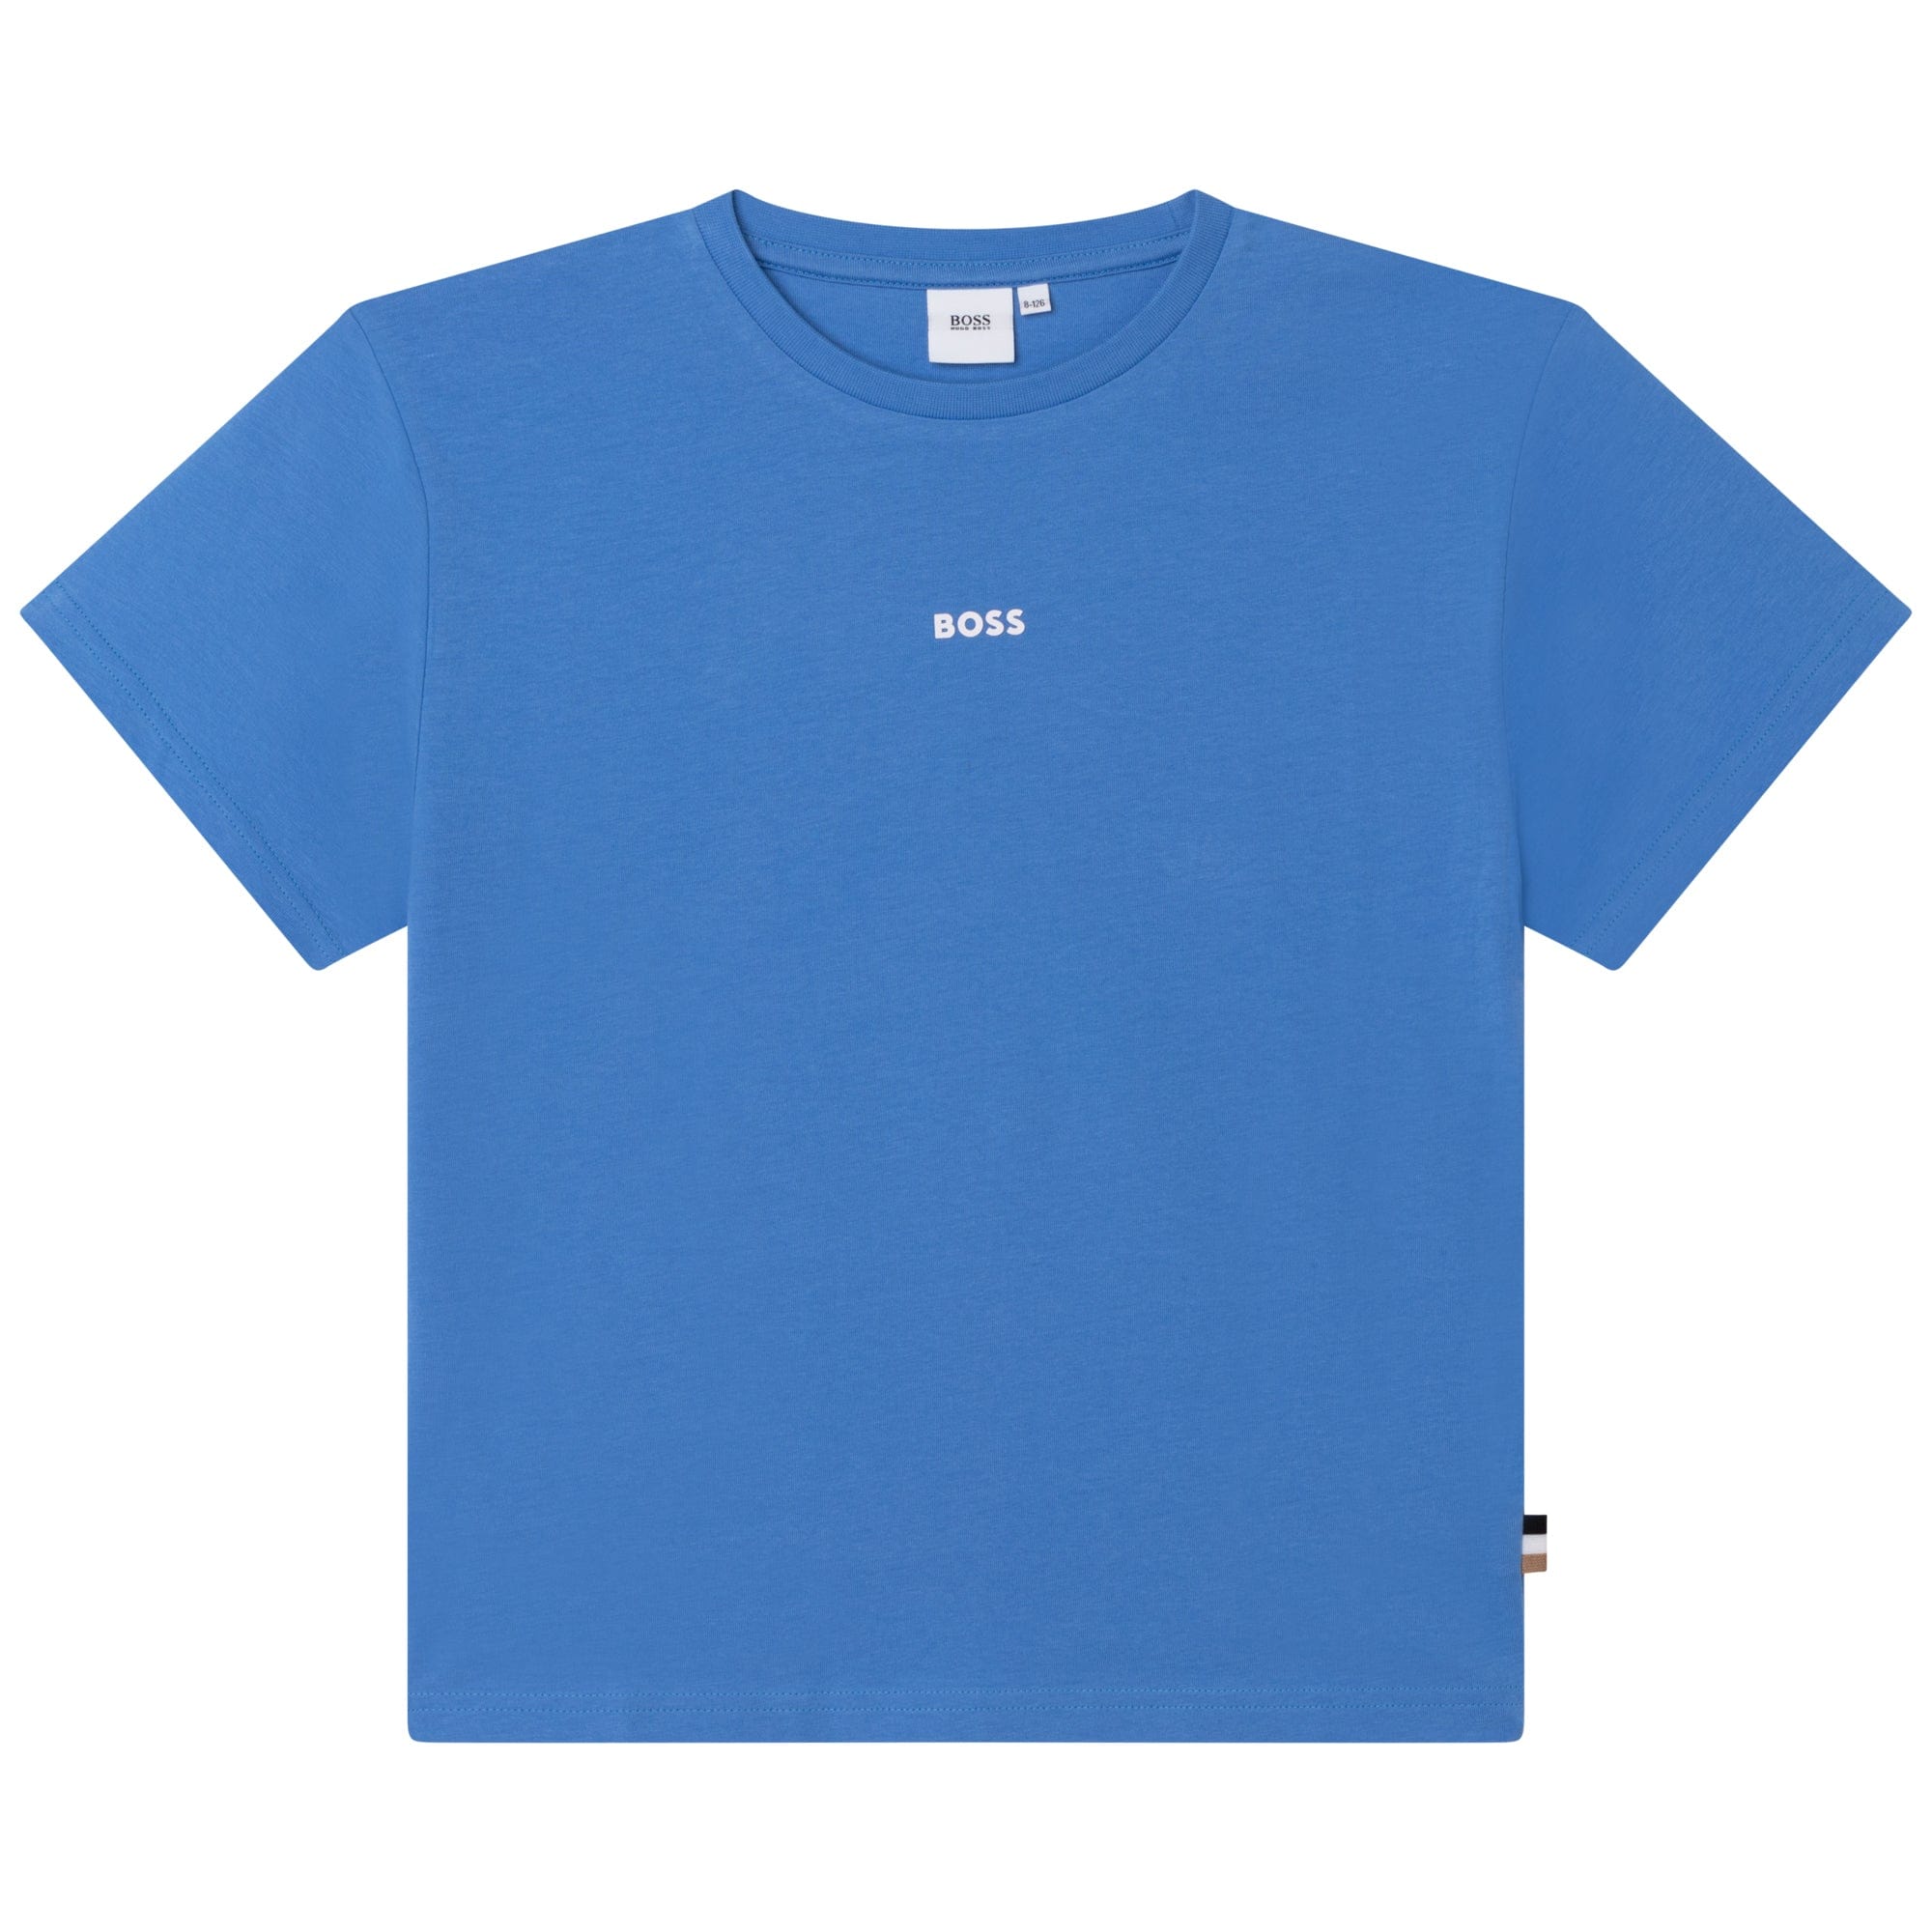 HUGO BOSS - Tee - Shirt  - Blue